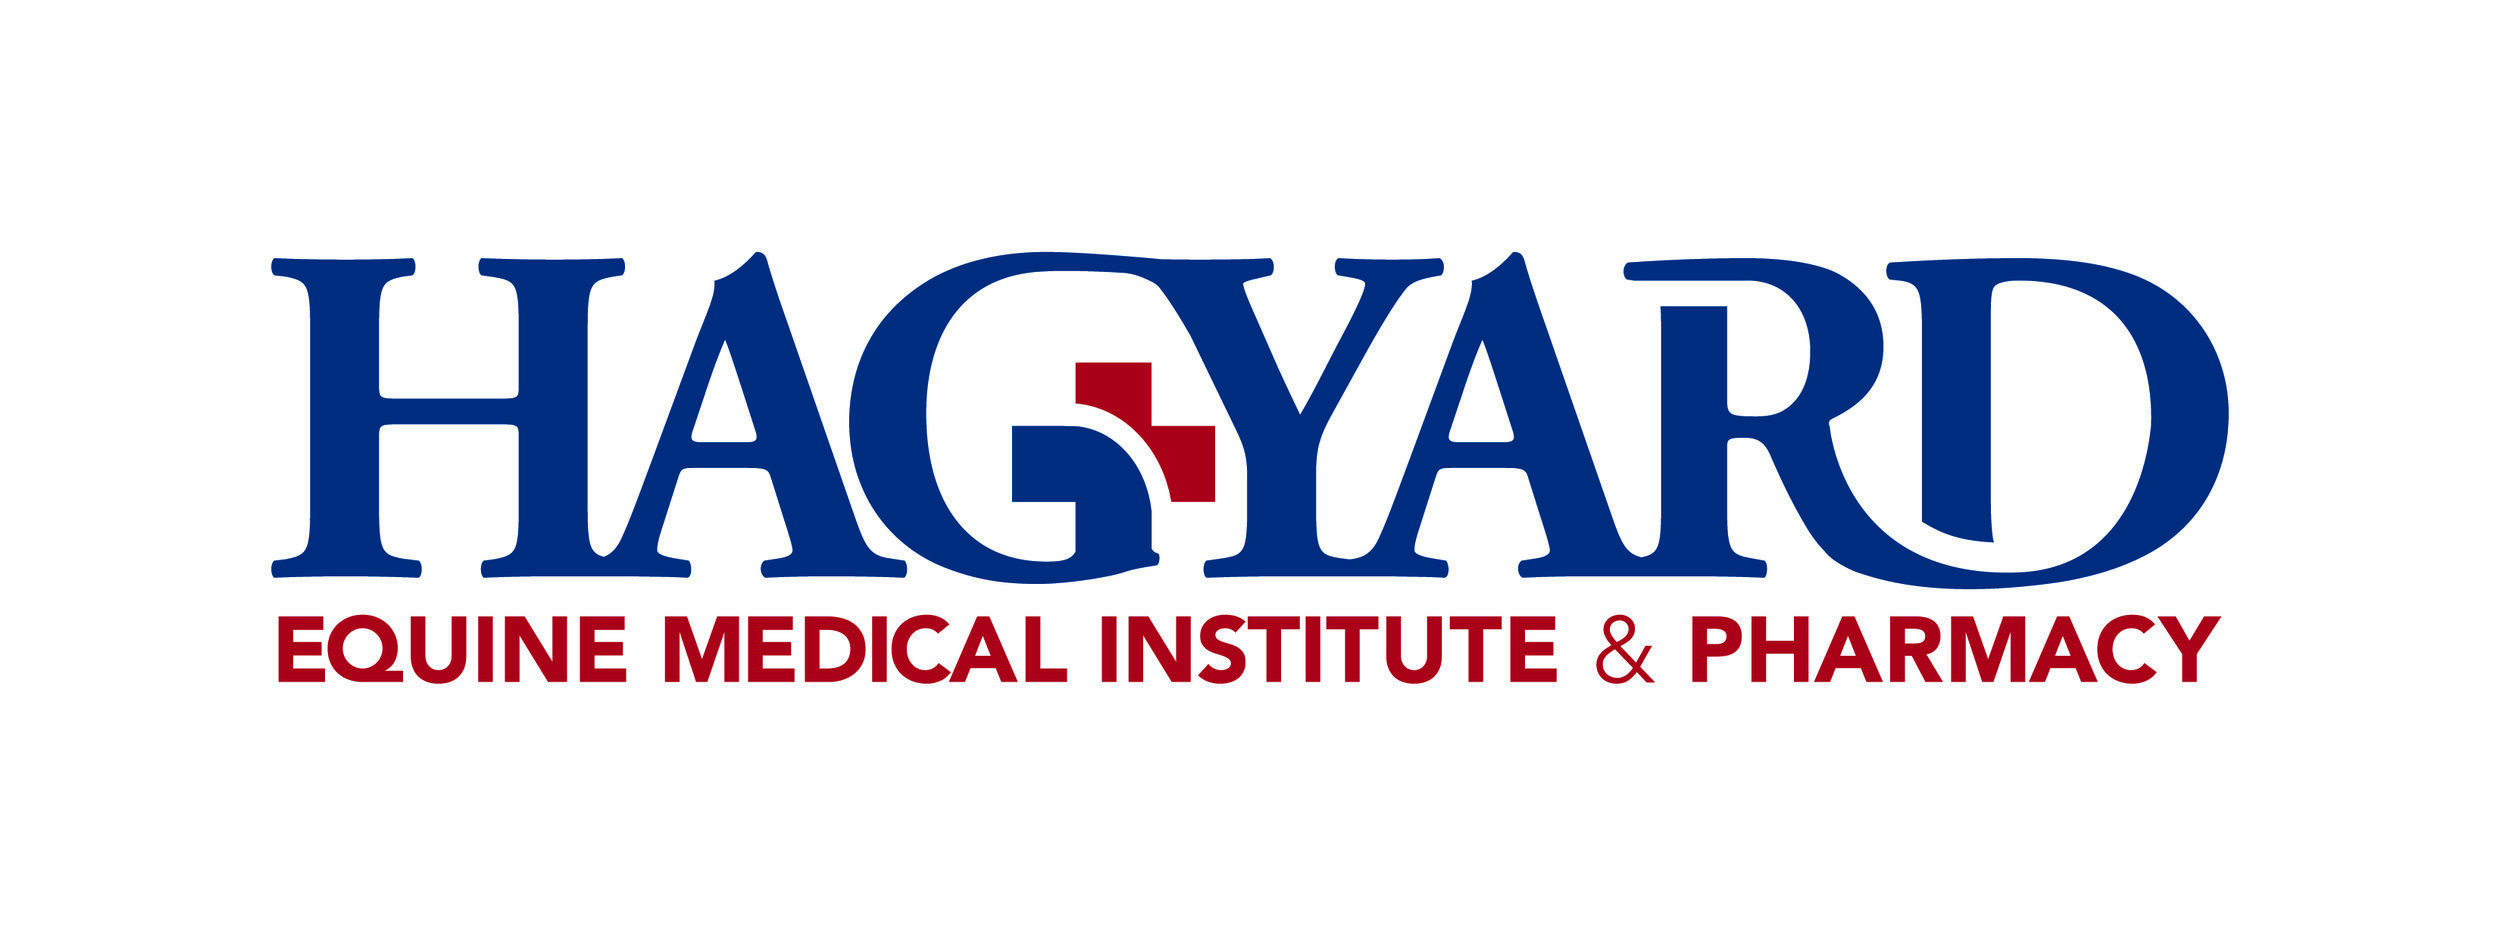 Hagyard Equine Medical Institute